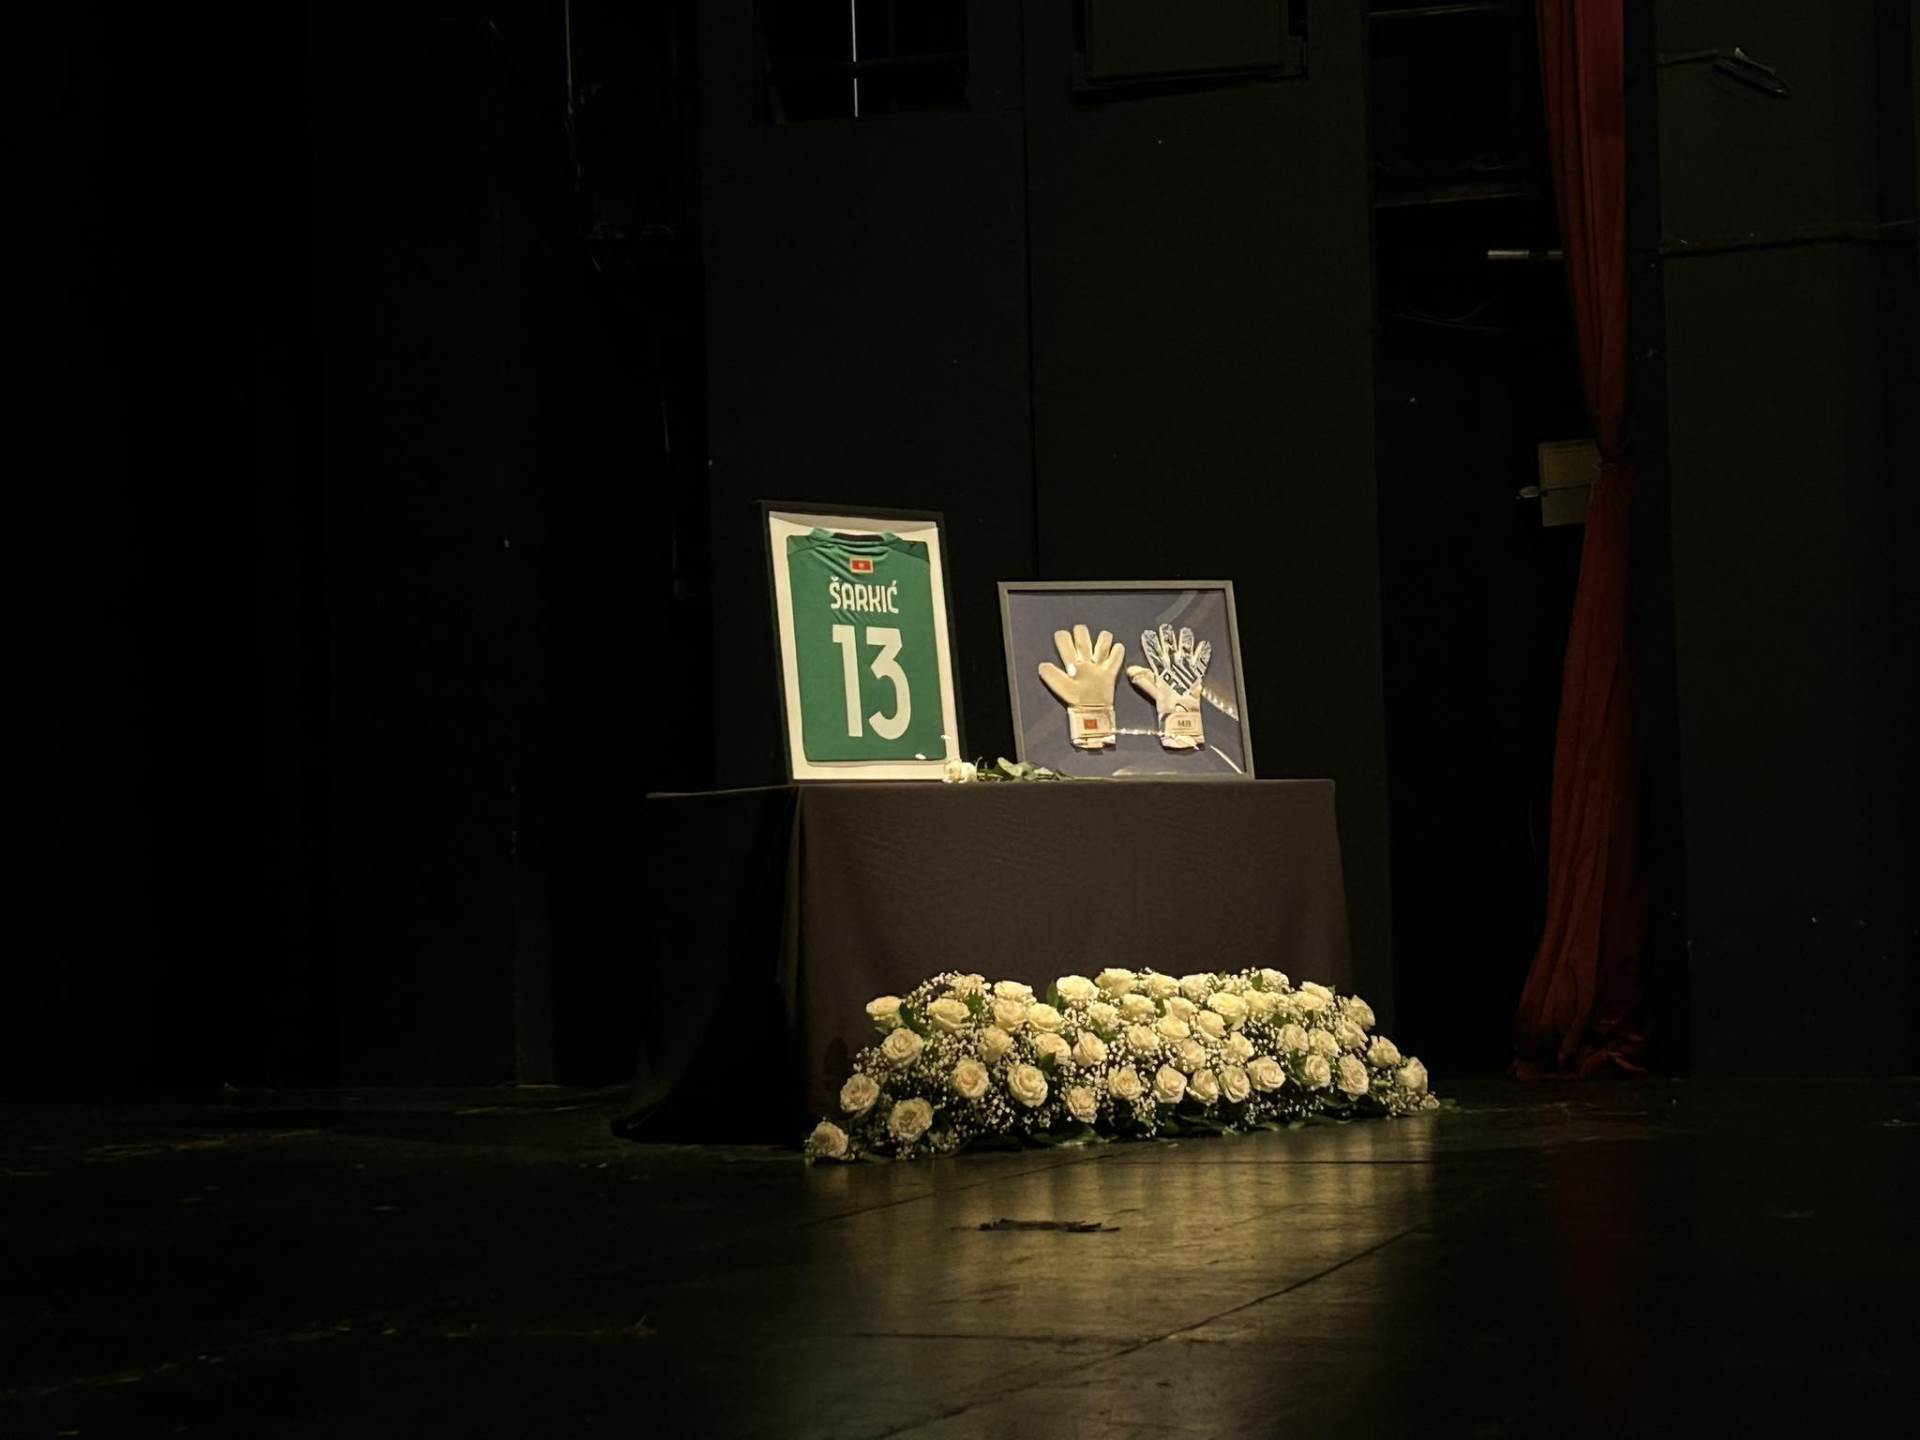  Održana komemoracija Matiji Šarkiću 